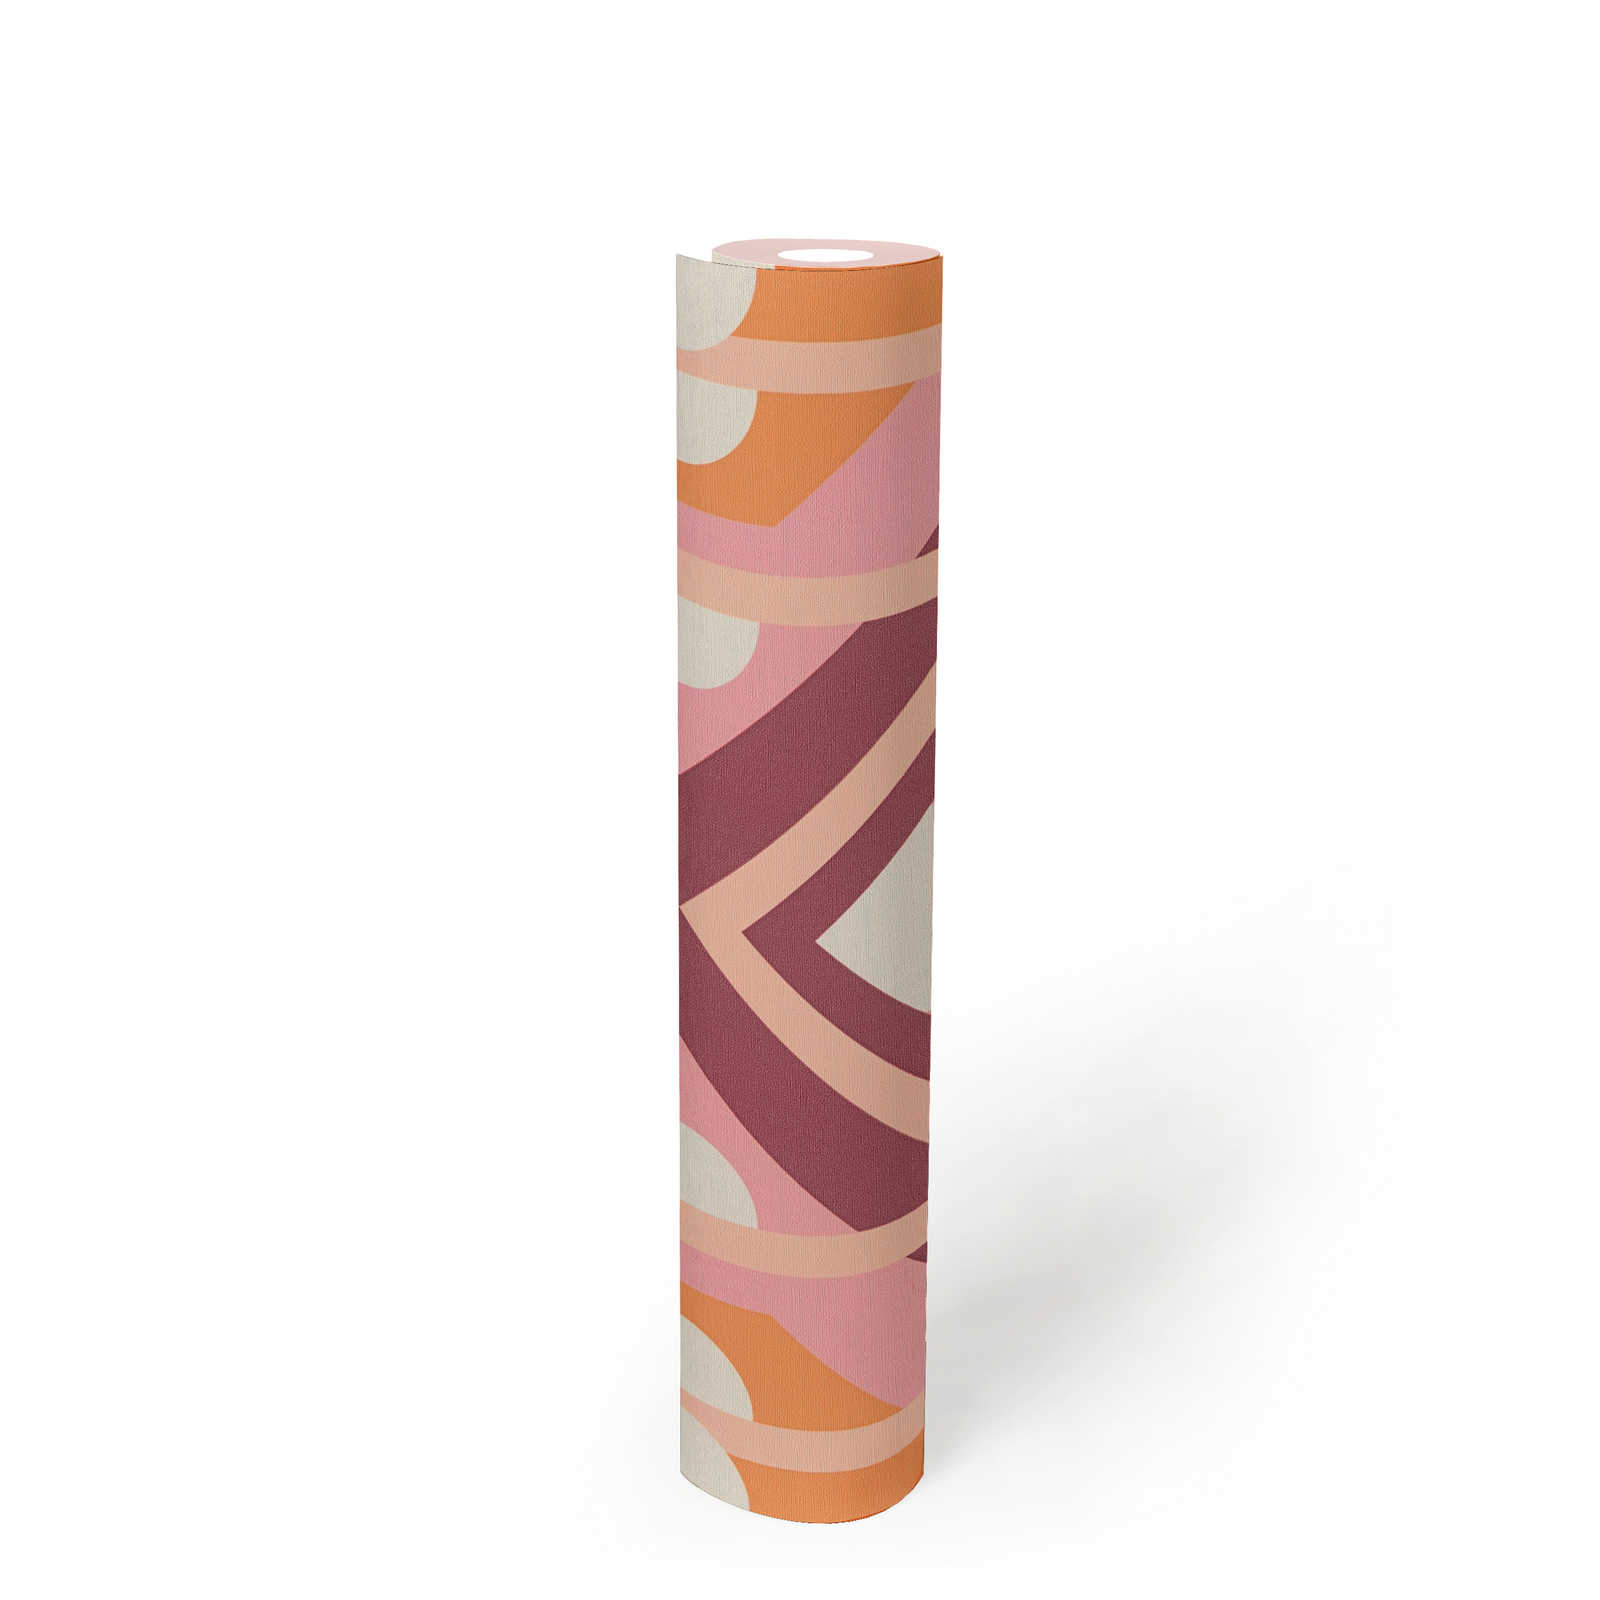             papier peint en papier intissé avec ornements géométriques de style rétro - orange, rose, blanc
        